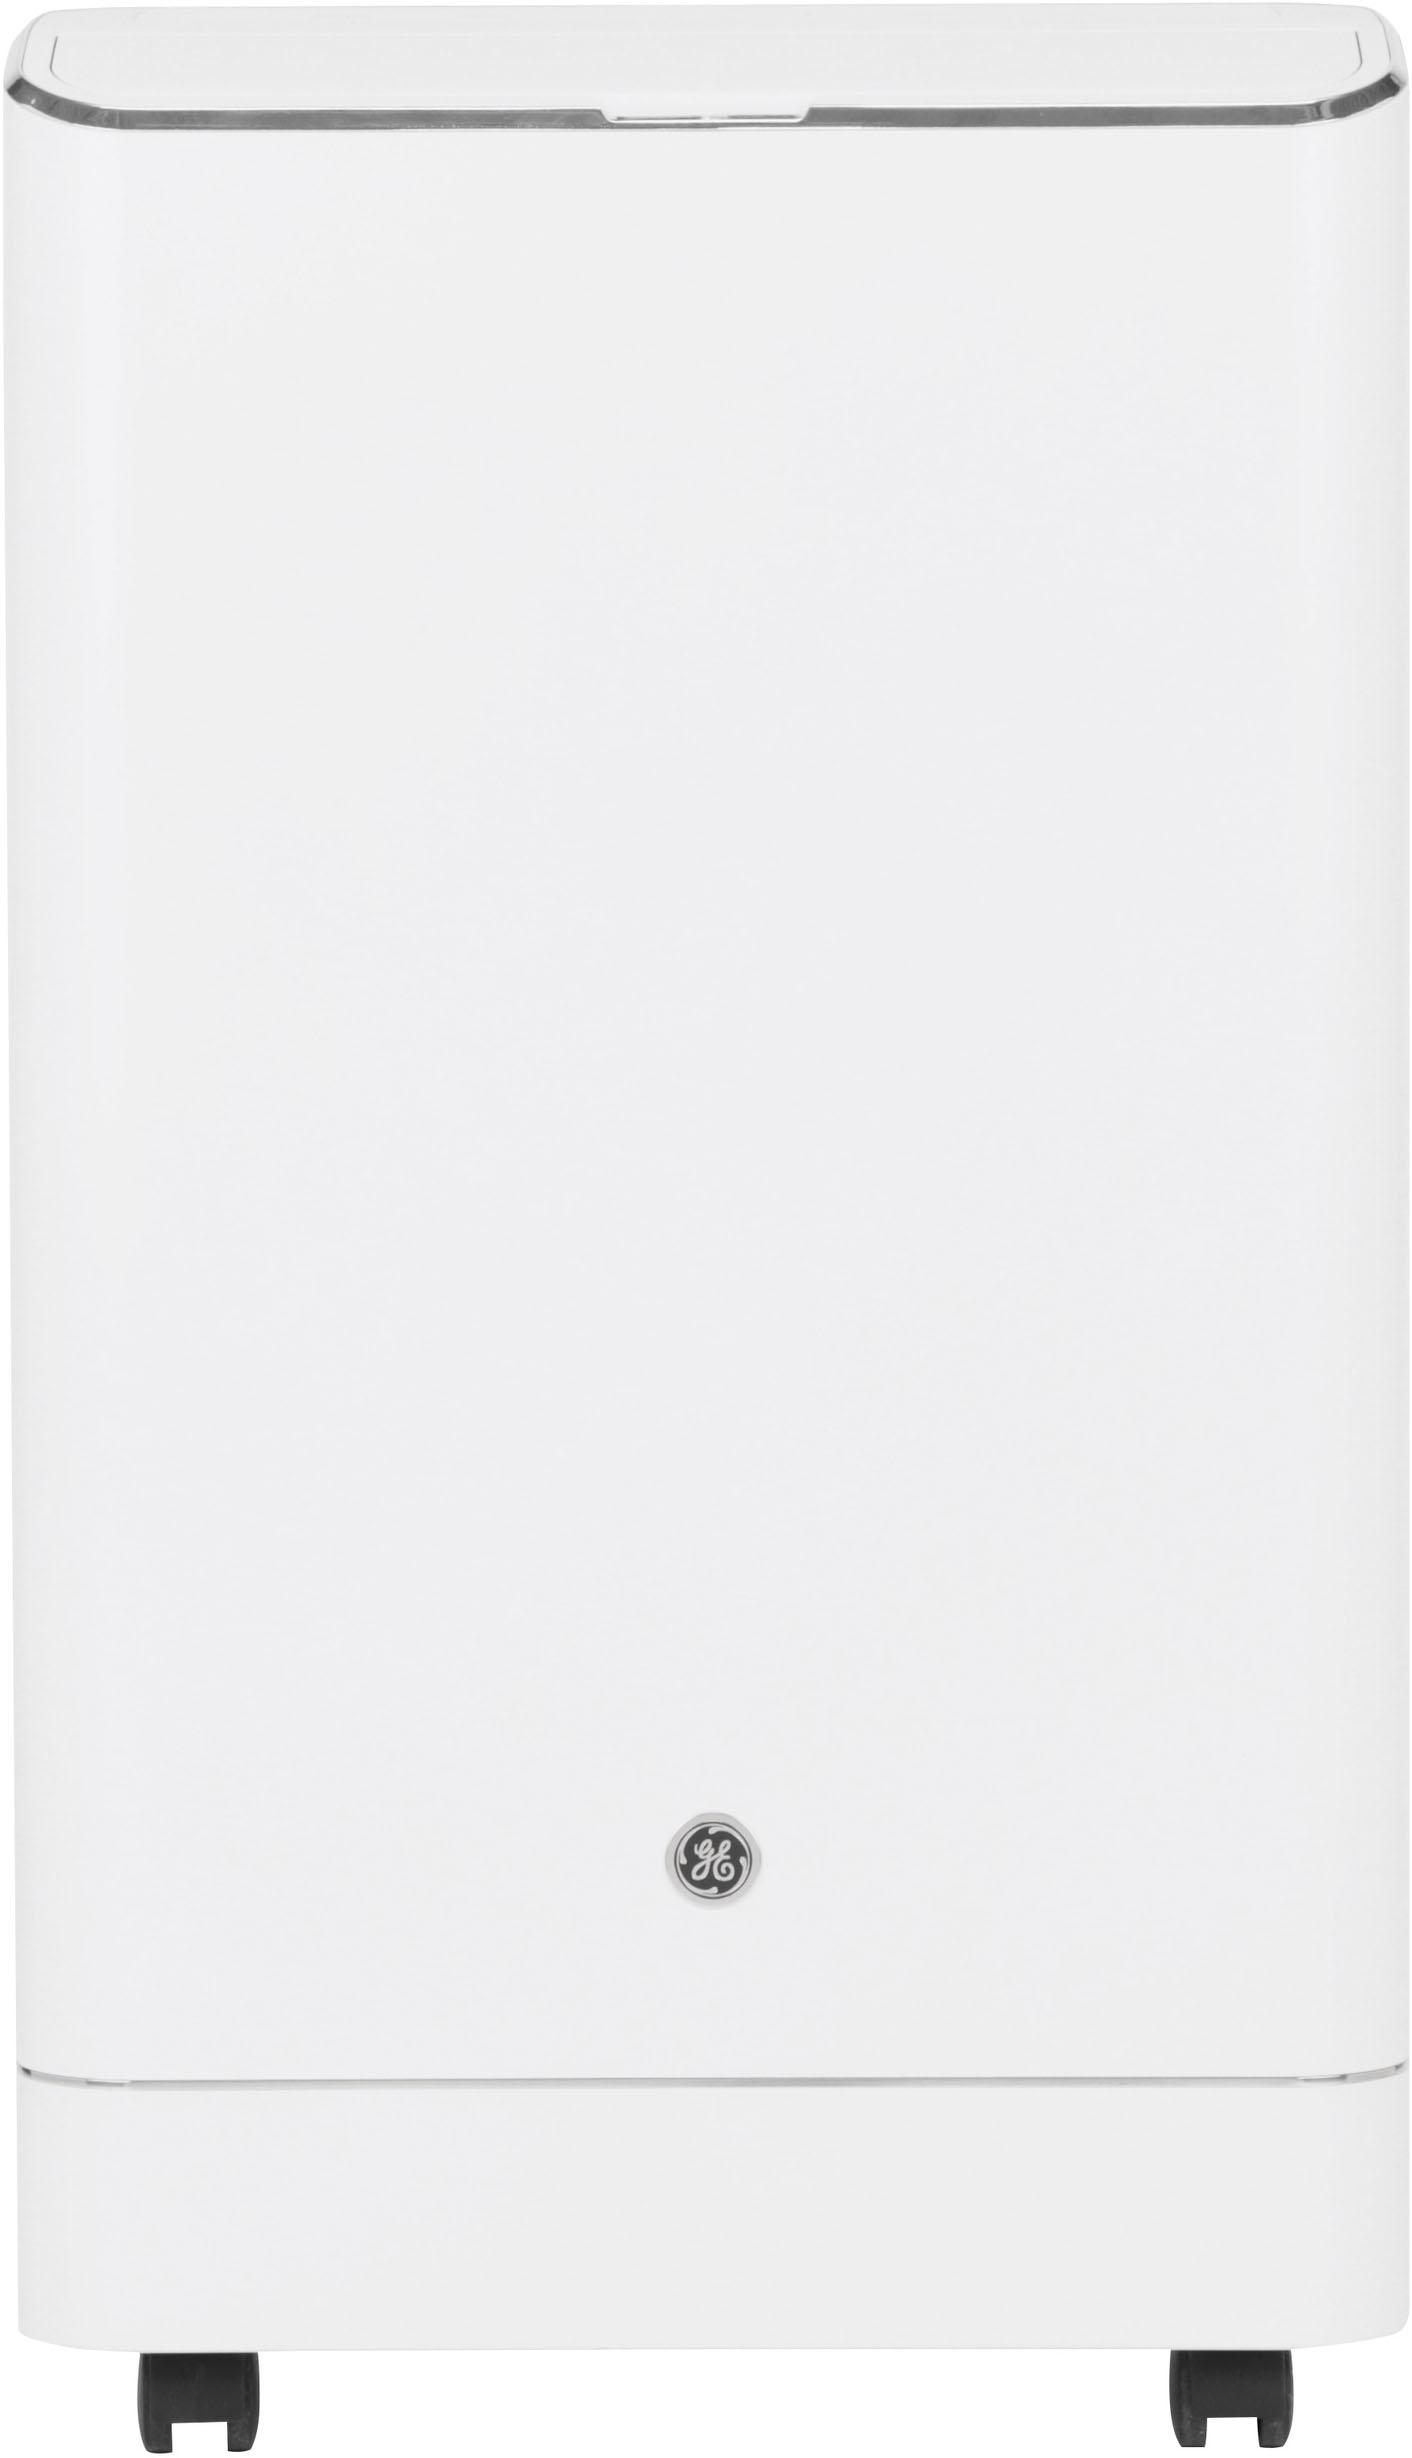 BPACT14WT Portable Air Conditioner, 14,000 BTU - White - Bed Bath